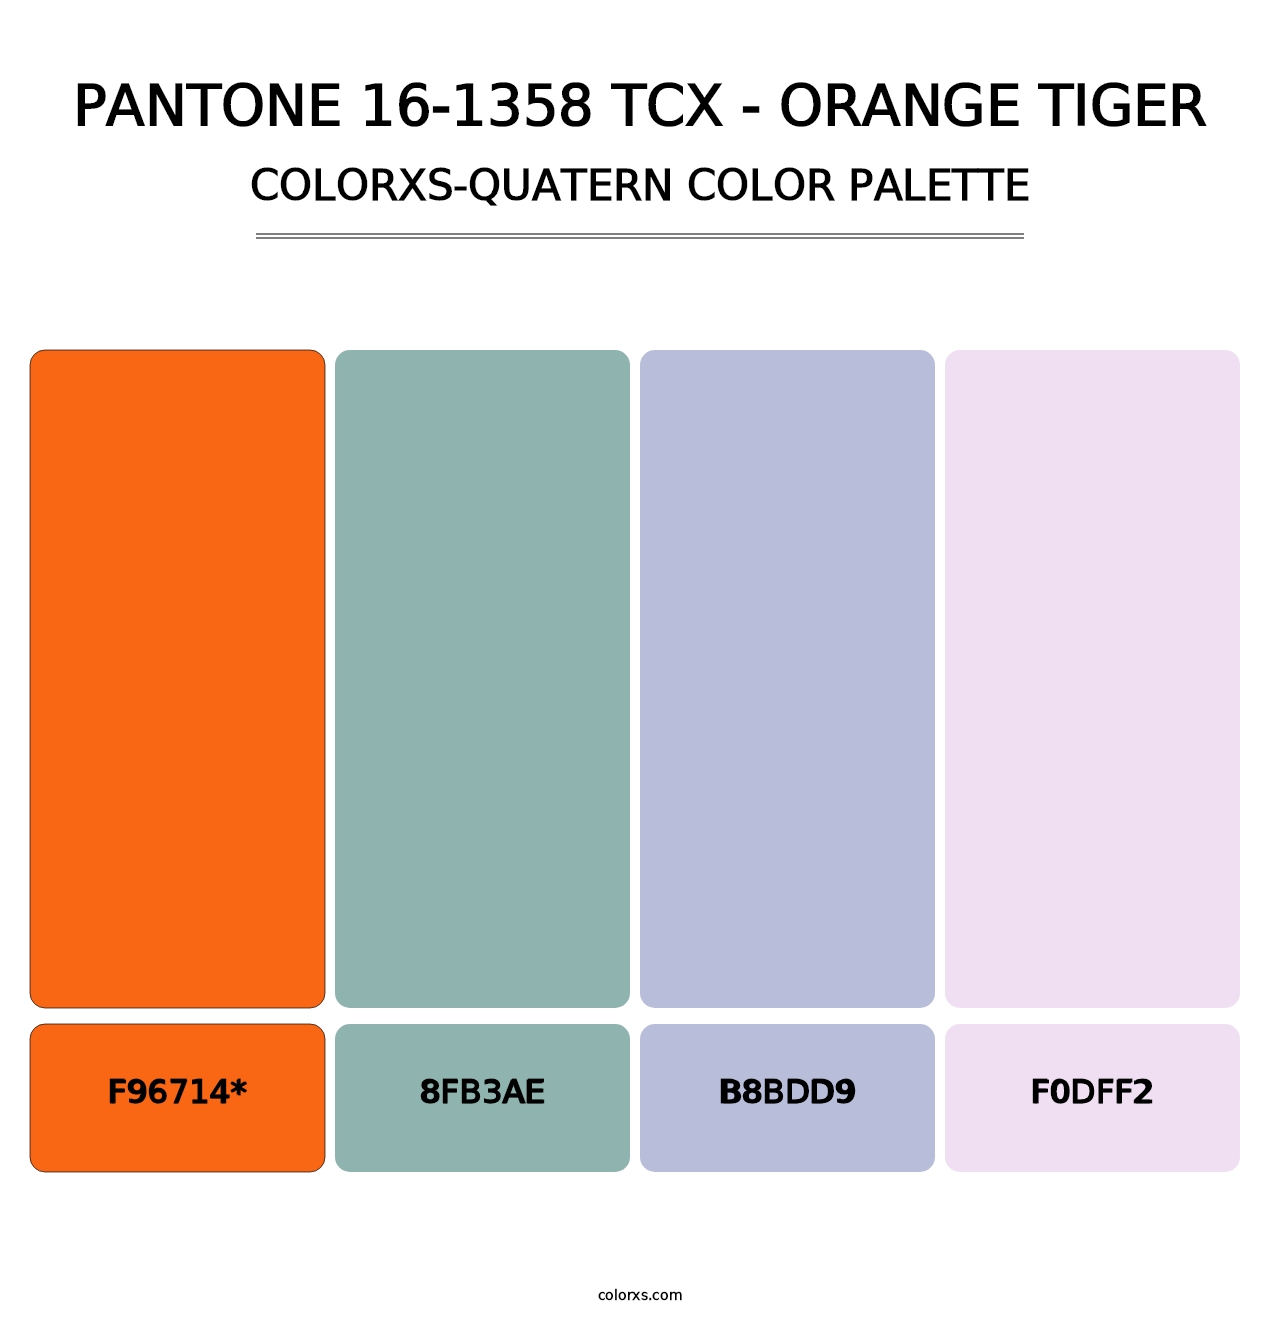 PANTONE 16-1358 TCX - Orange Tiger - Colorxs Quad Palette